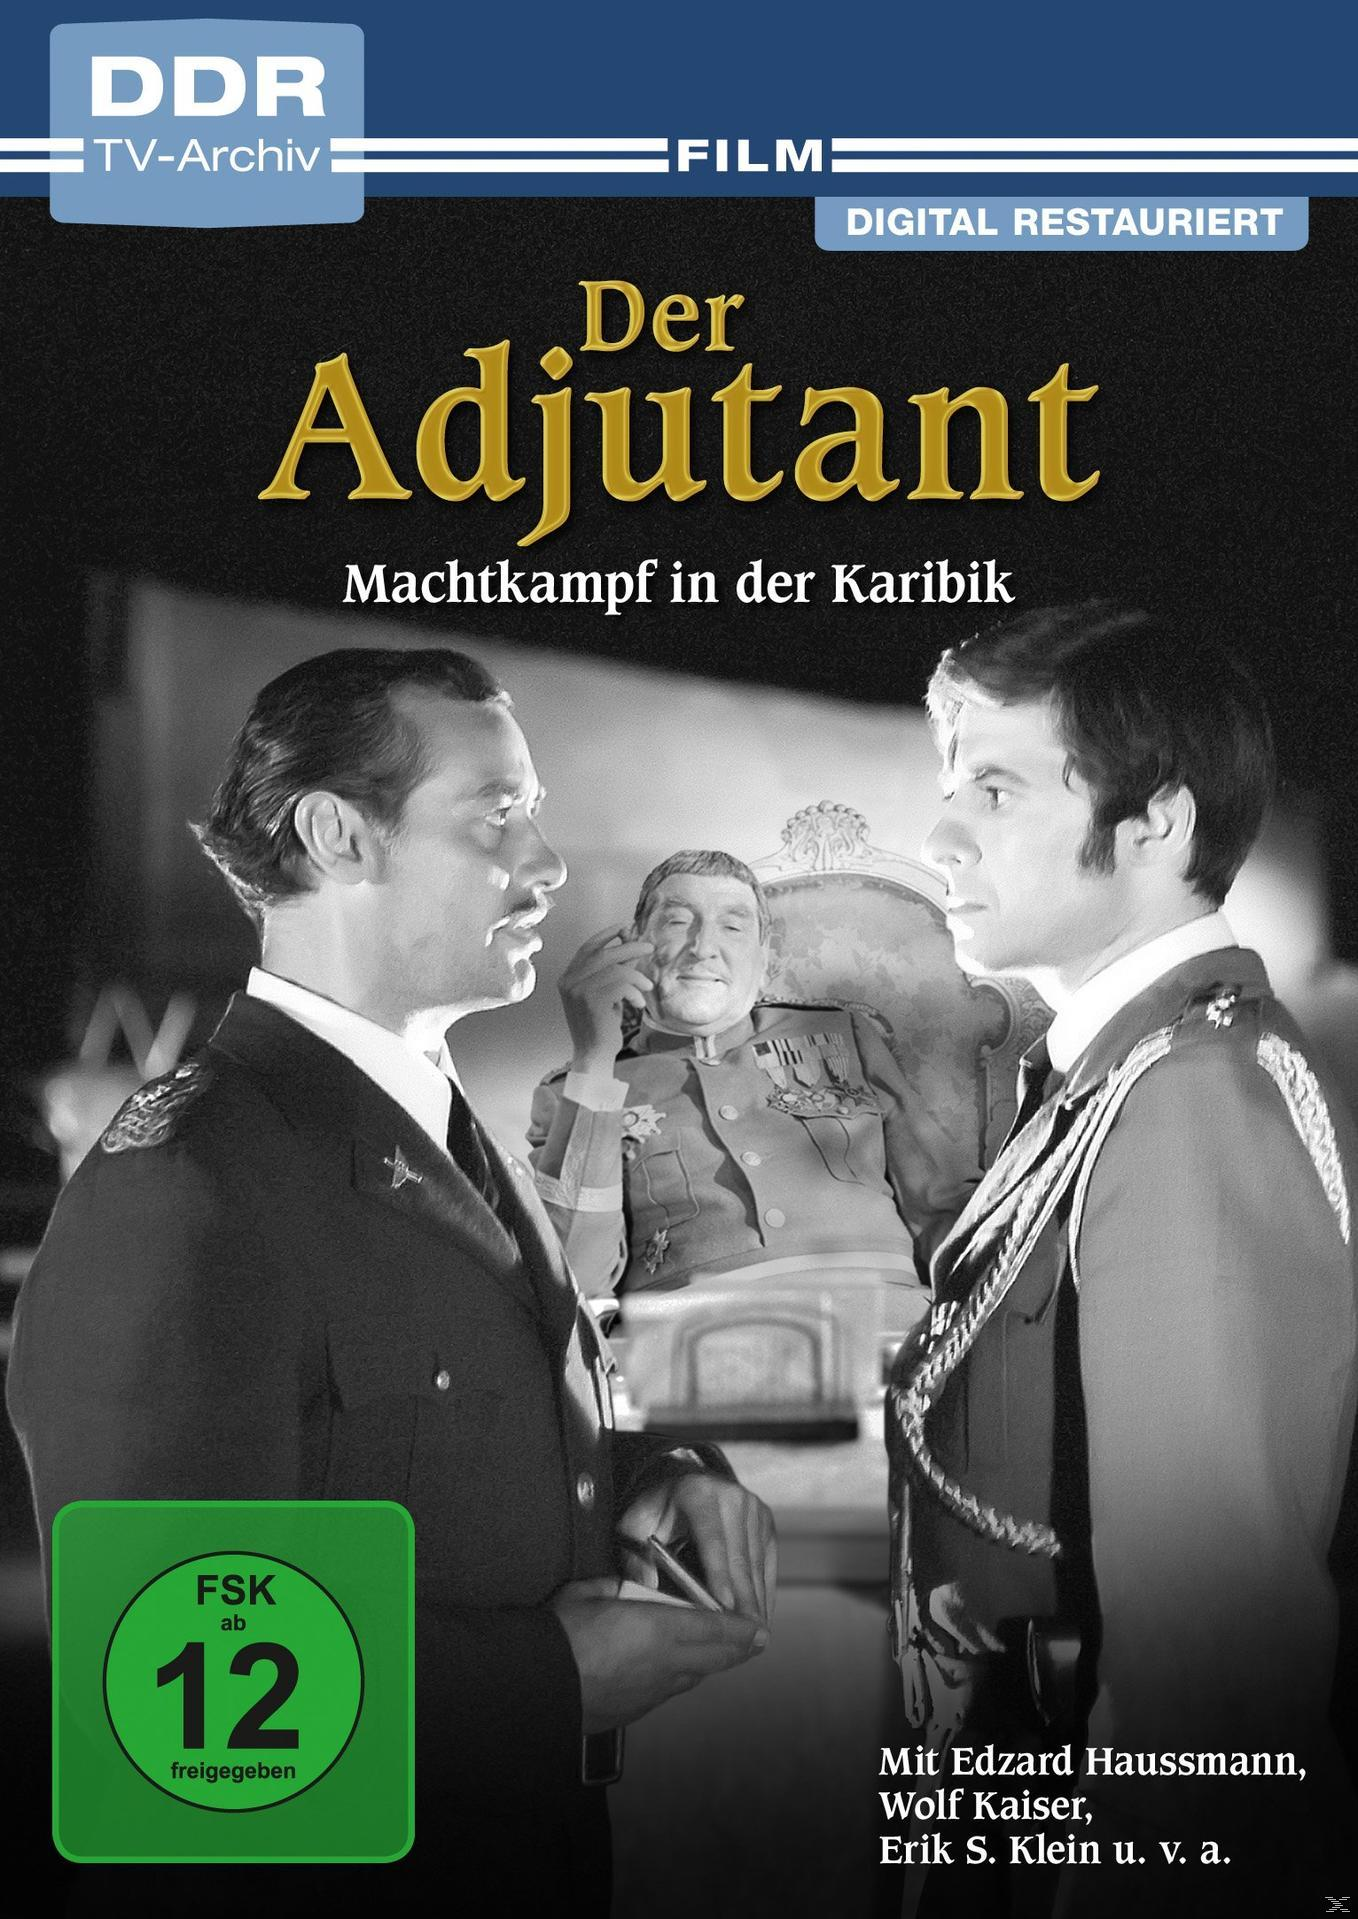 Adjutant Der DVD